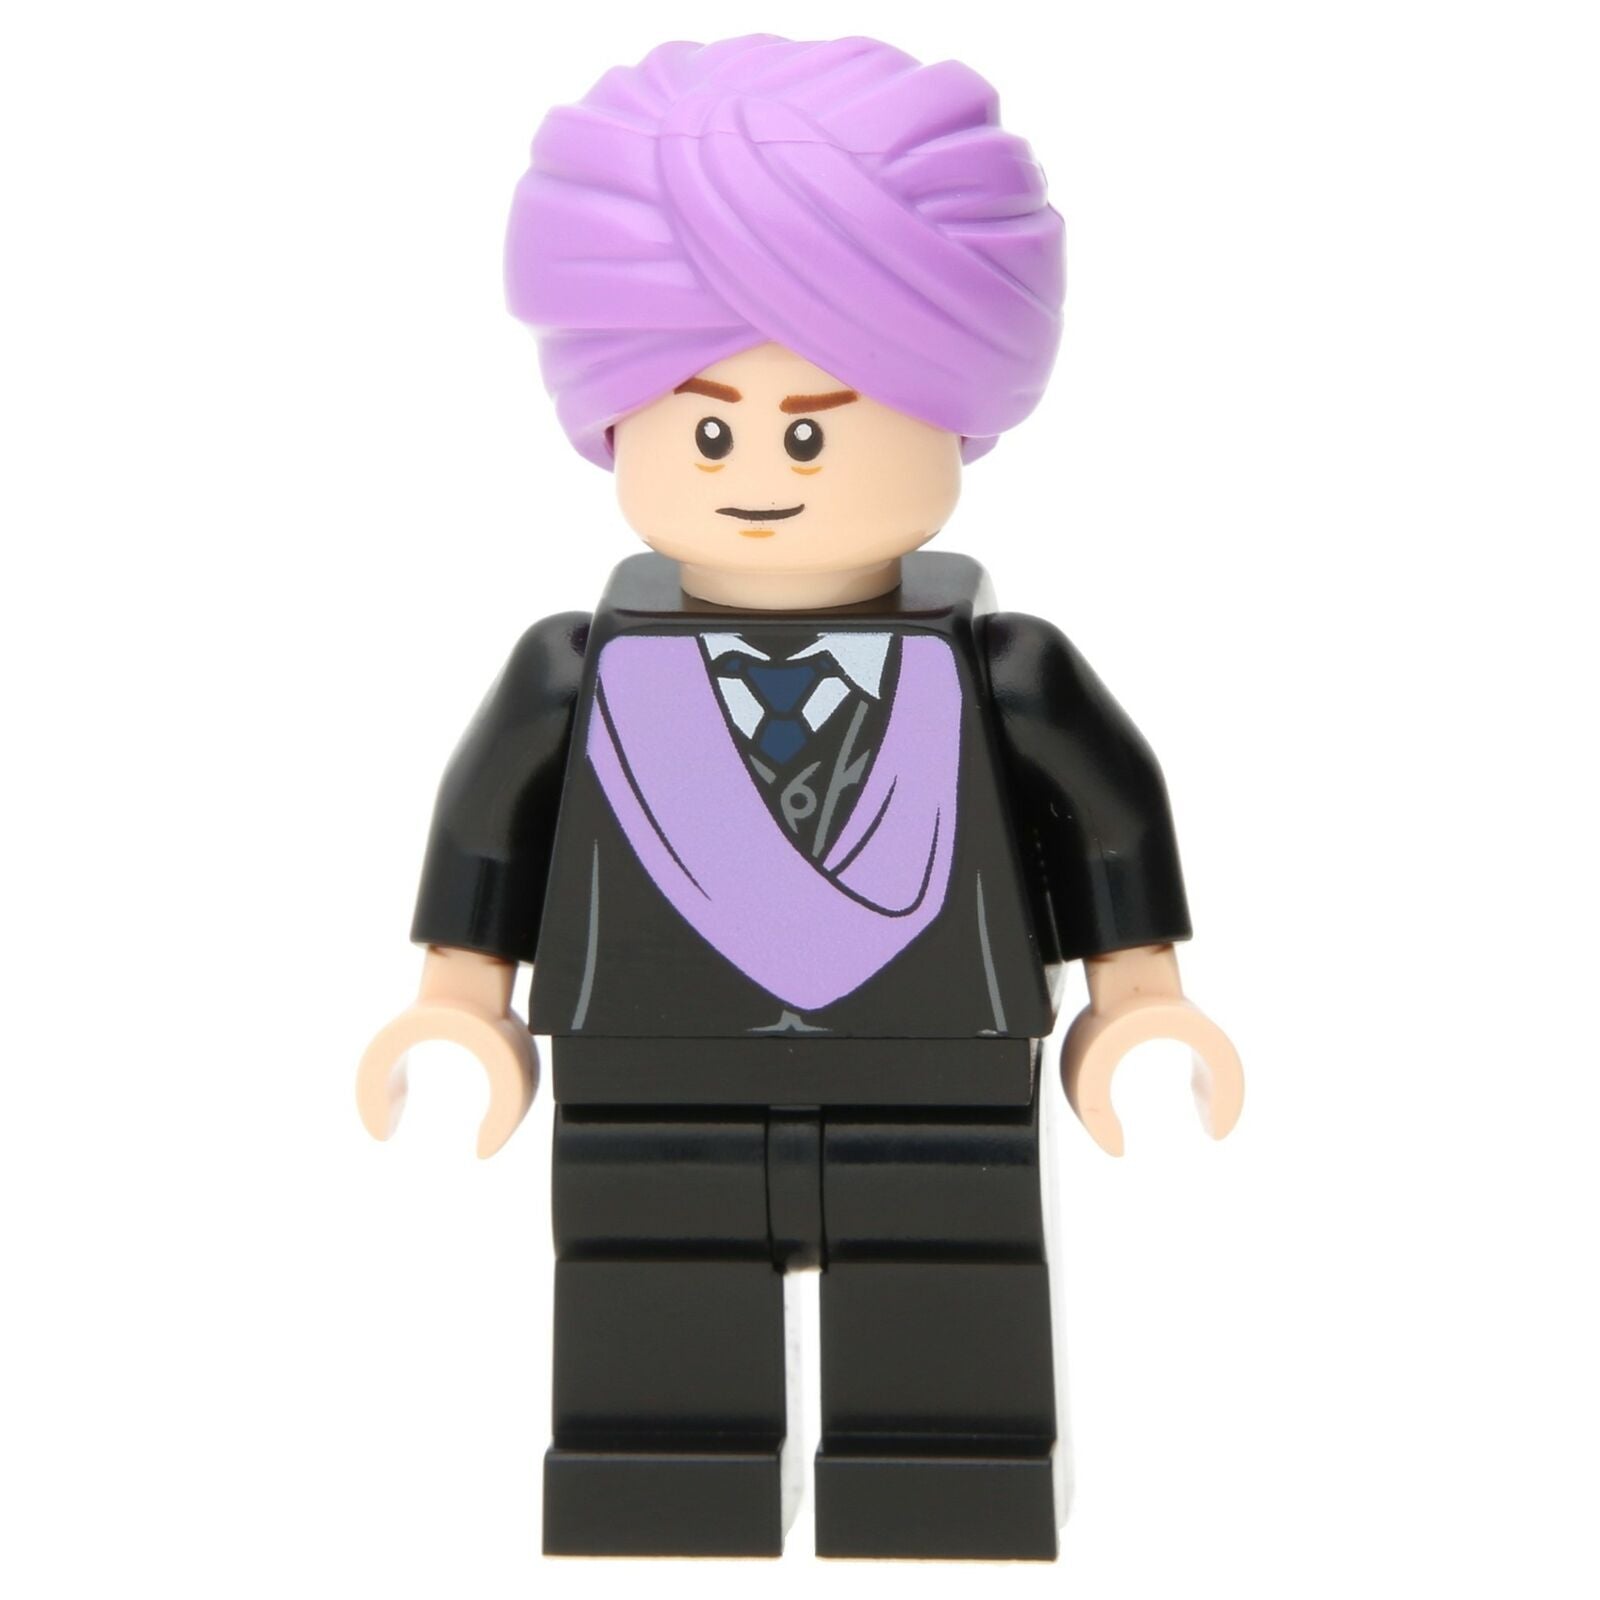 Lego Harry Potter Minifigure - Professor Quirinus Quirrell (Lavender Turban)